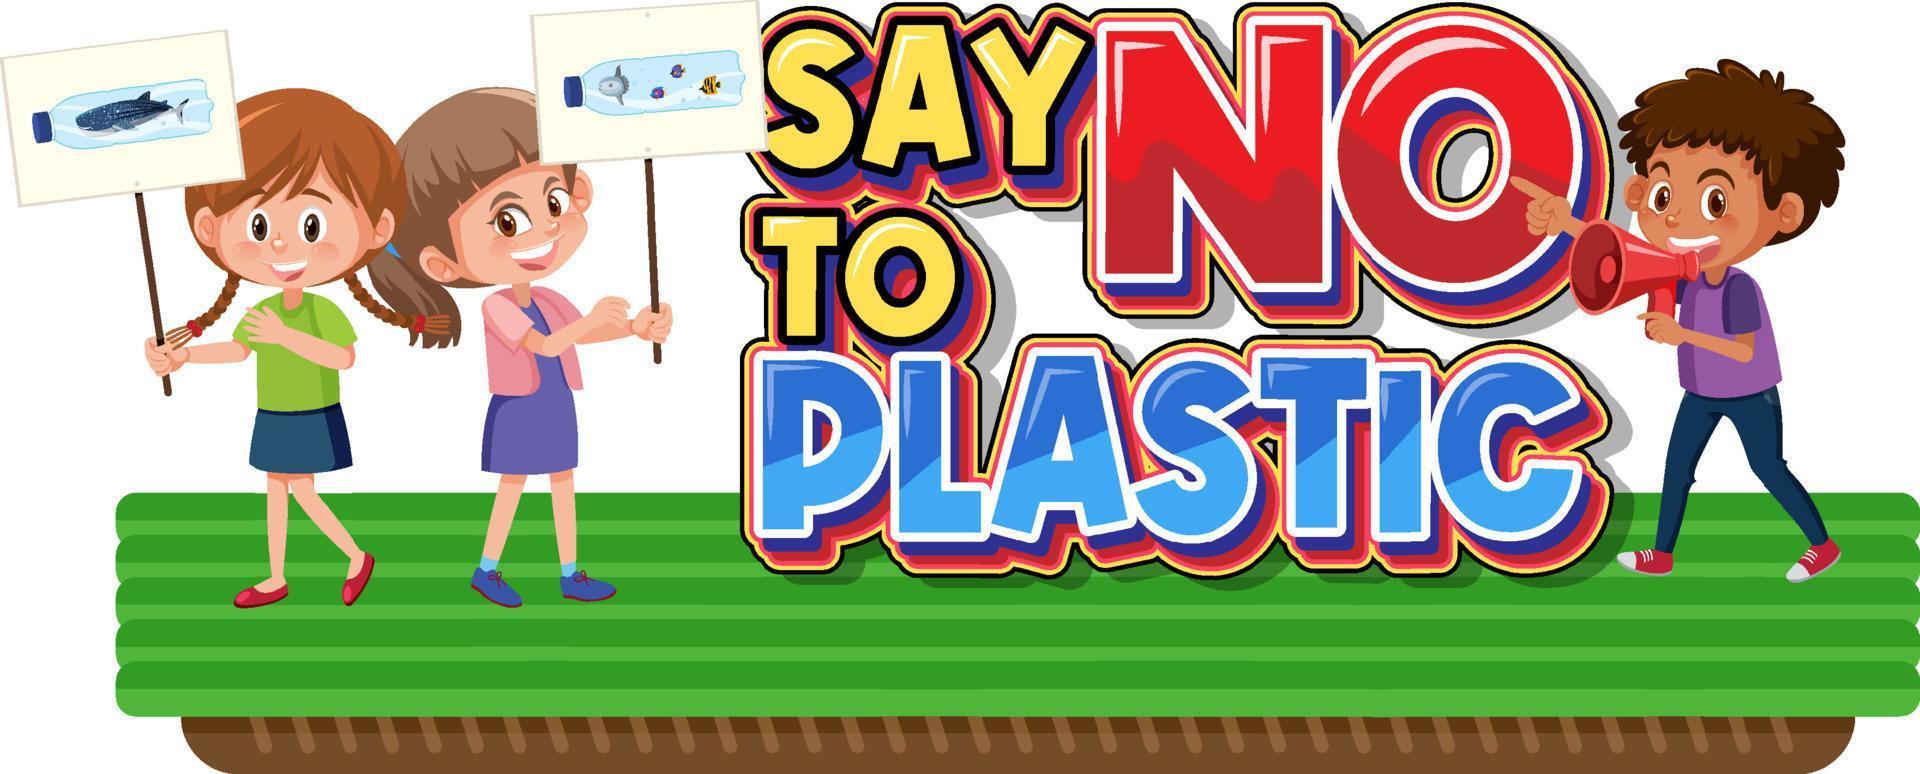 zeg nee tegen plastic logobanner met kindercartoon vector